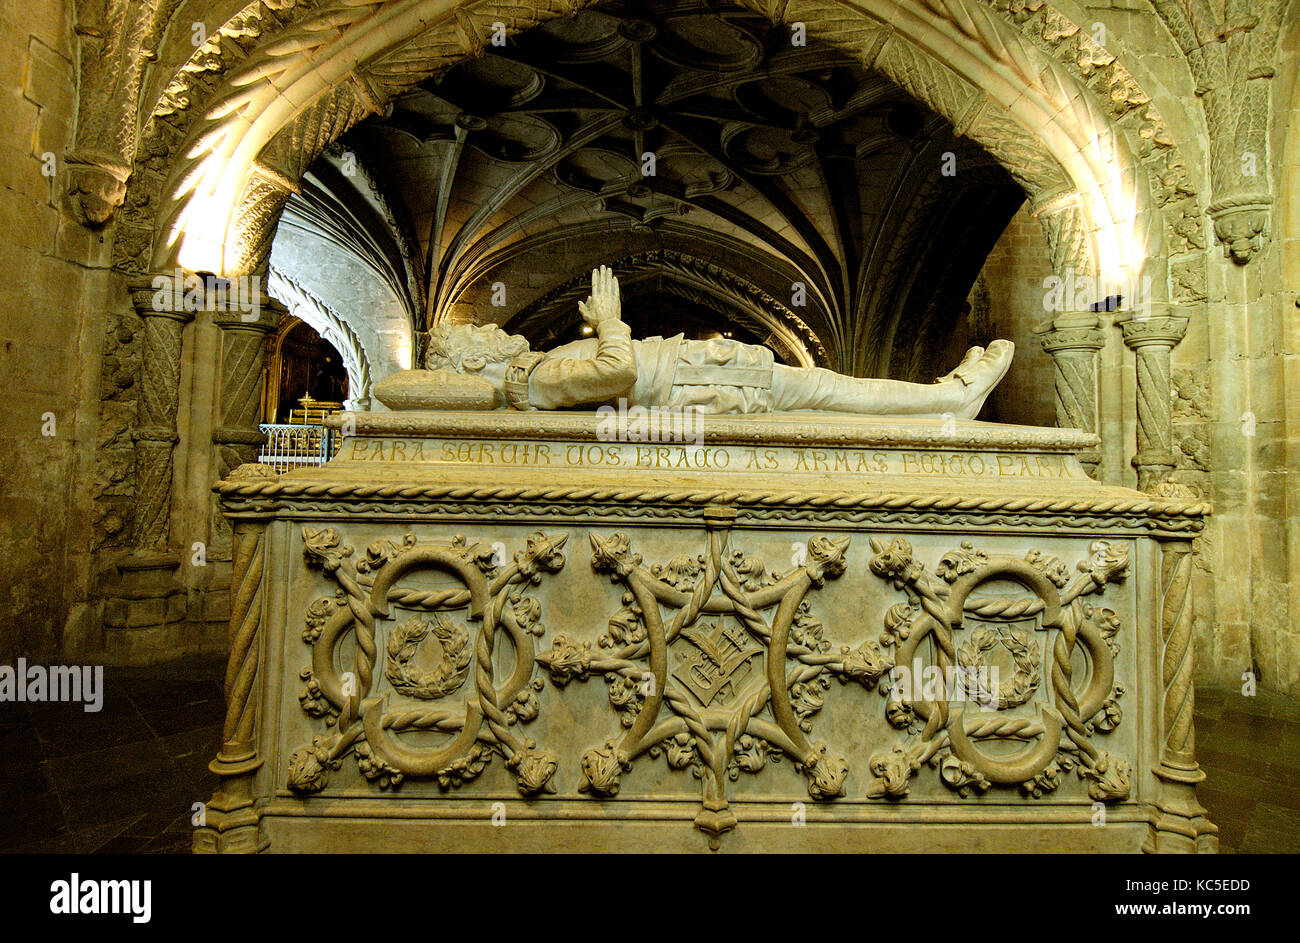 Tombe de Luis de Camoes à l'intérieur de l'église du monastère des Hiéronymites, Site du patrimoine mondial de l'Unesco. Lisbonne, Portugal Banque D'Images